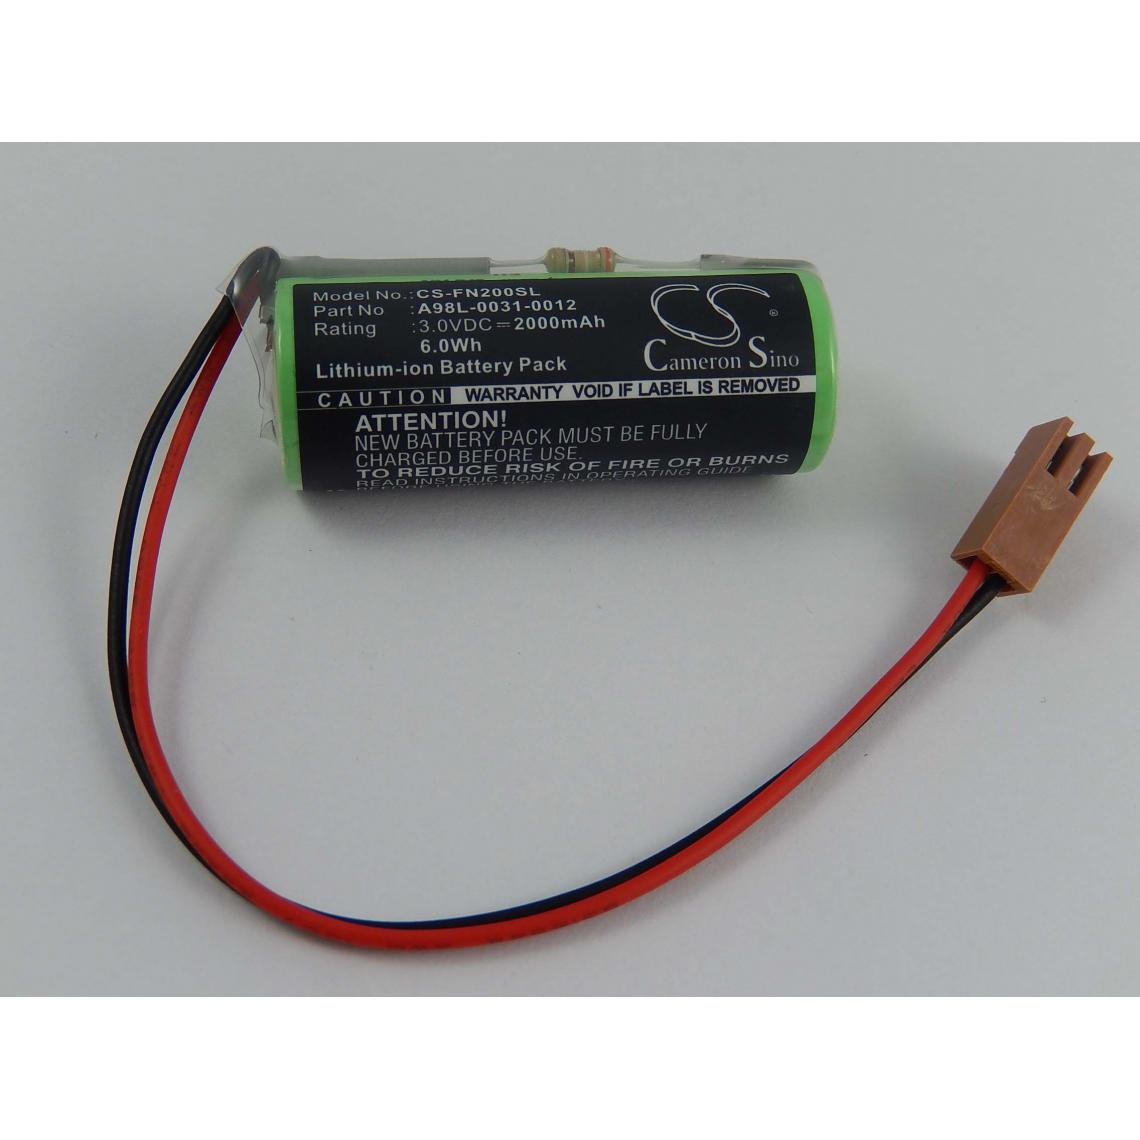 Vhbw - vhbw Batterie Li-Ion 2000mAh (3V) pour CNC Controller GE Fanuc 21i, 21i-A, 21i-B, 30i, 31i, 32i-A comme A98L00310012, A98L-0031-0012, CR17540SE-RL. - Autre appareil de mesure